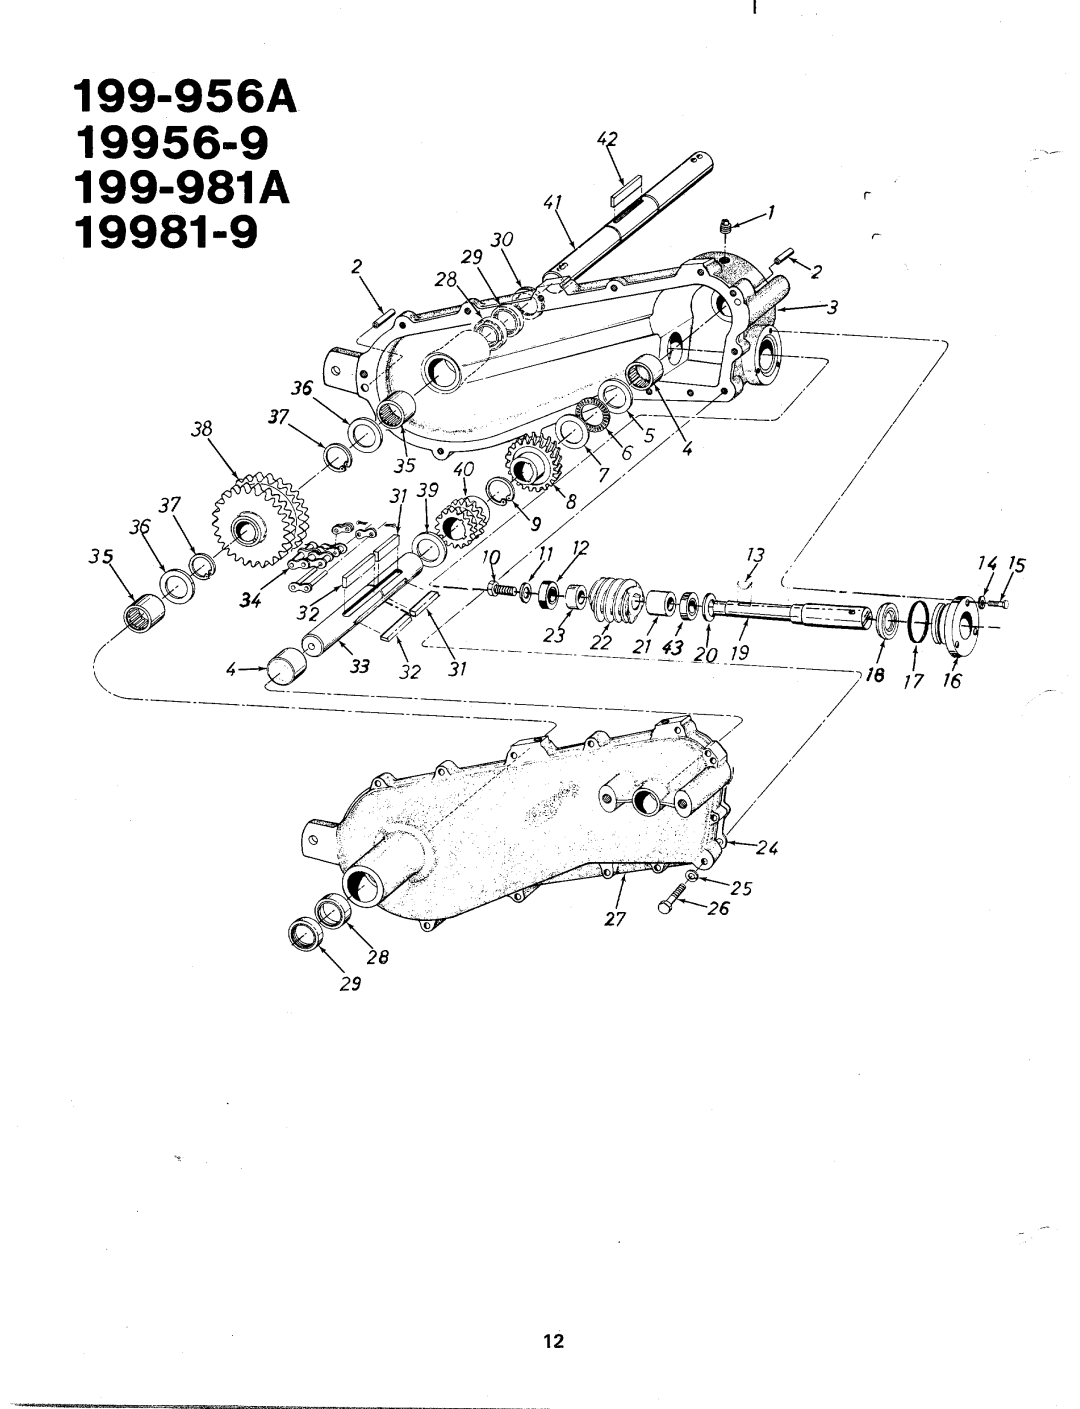 Bolens 19956-9, 199-956A, 19981-9, 199-981A manual 